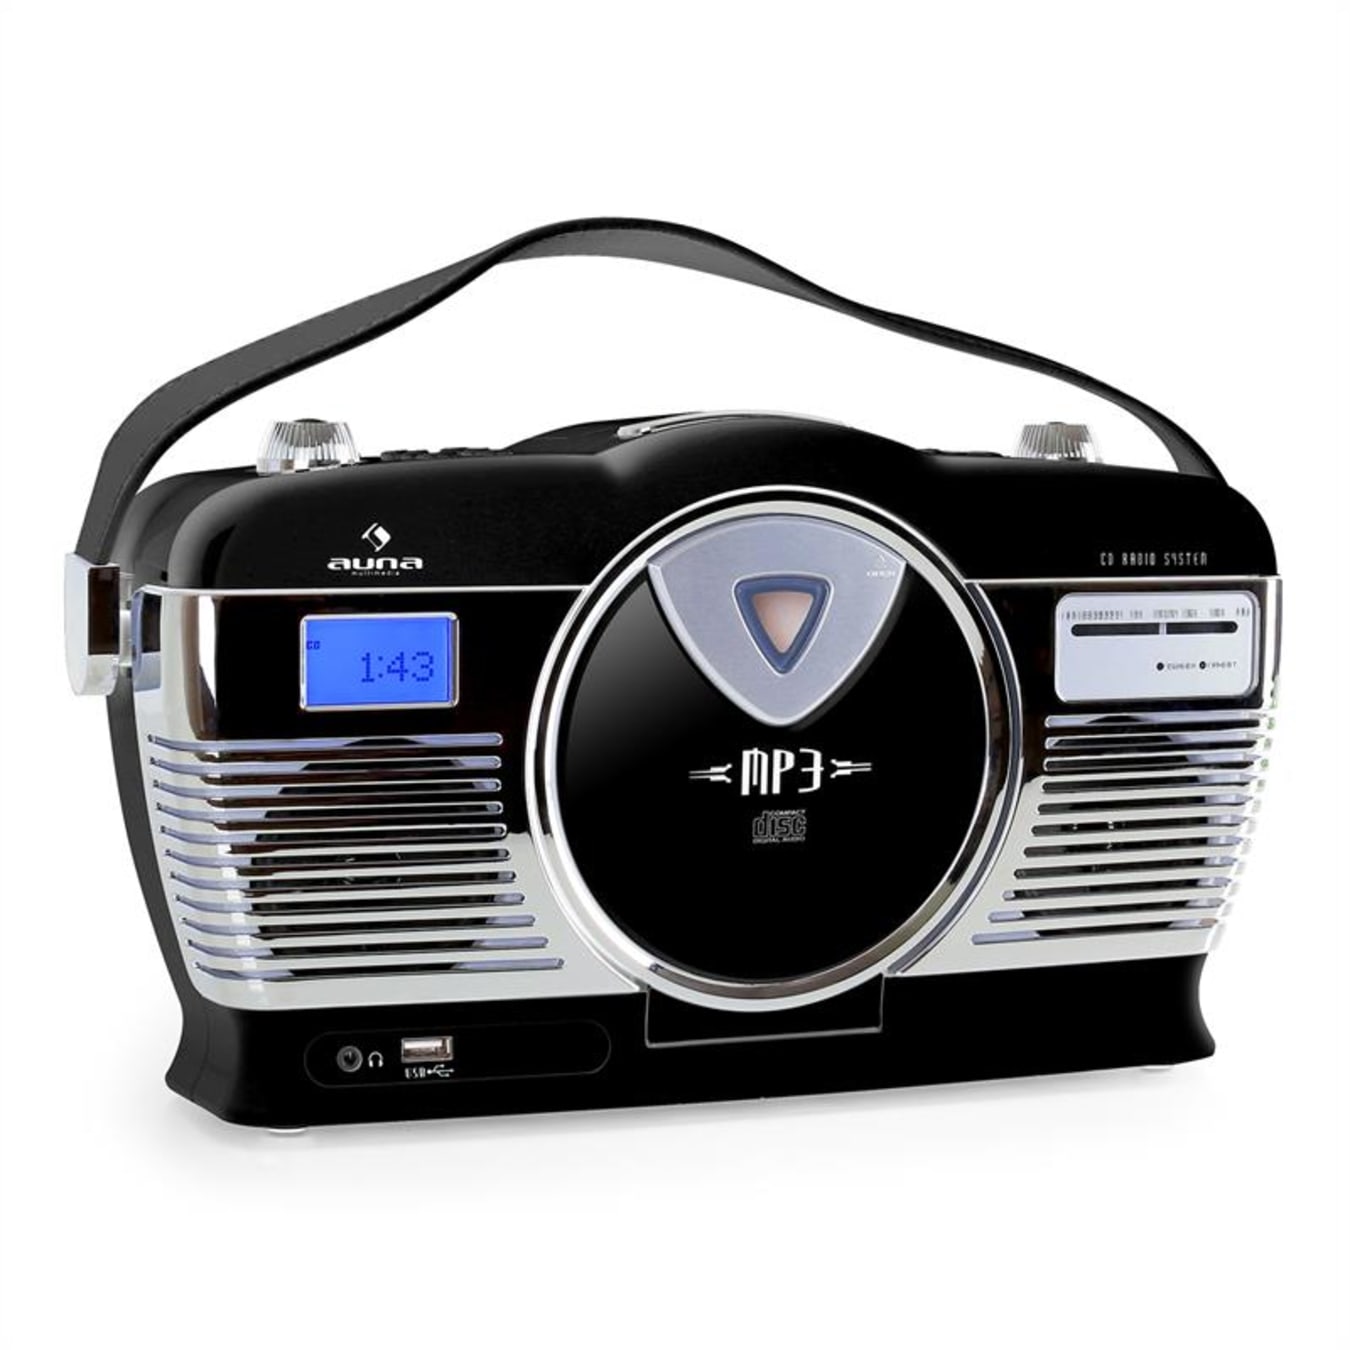 Lecteur CD Portable avec radio - Noir